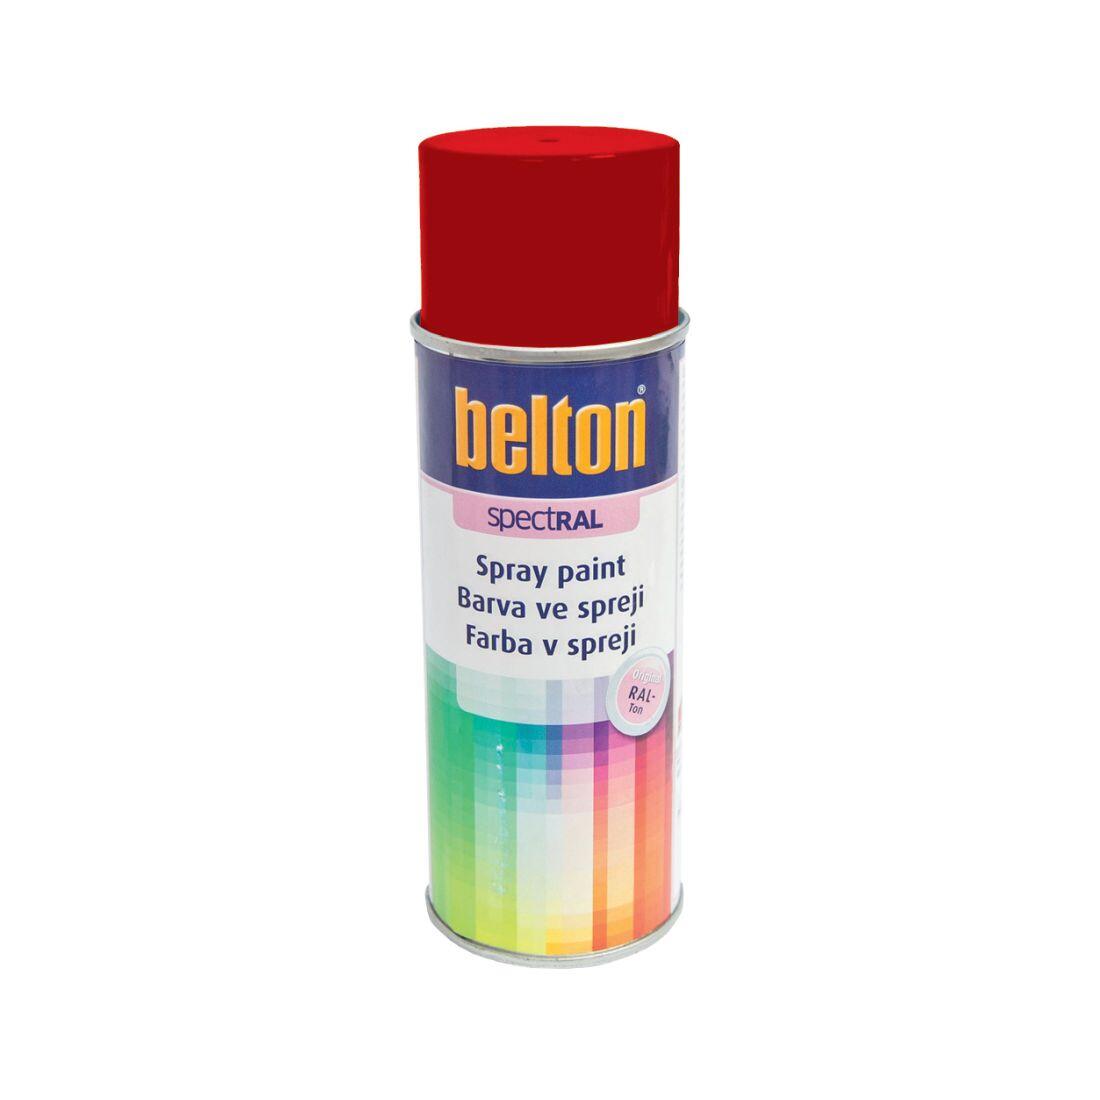 barva ve spreji BELTON RAL 3000, 400ml ČRV ohnivě lesklá 0.31 Kg MAXMIX Sklad14 825129 13